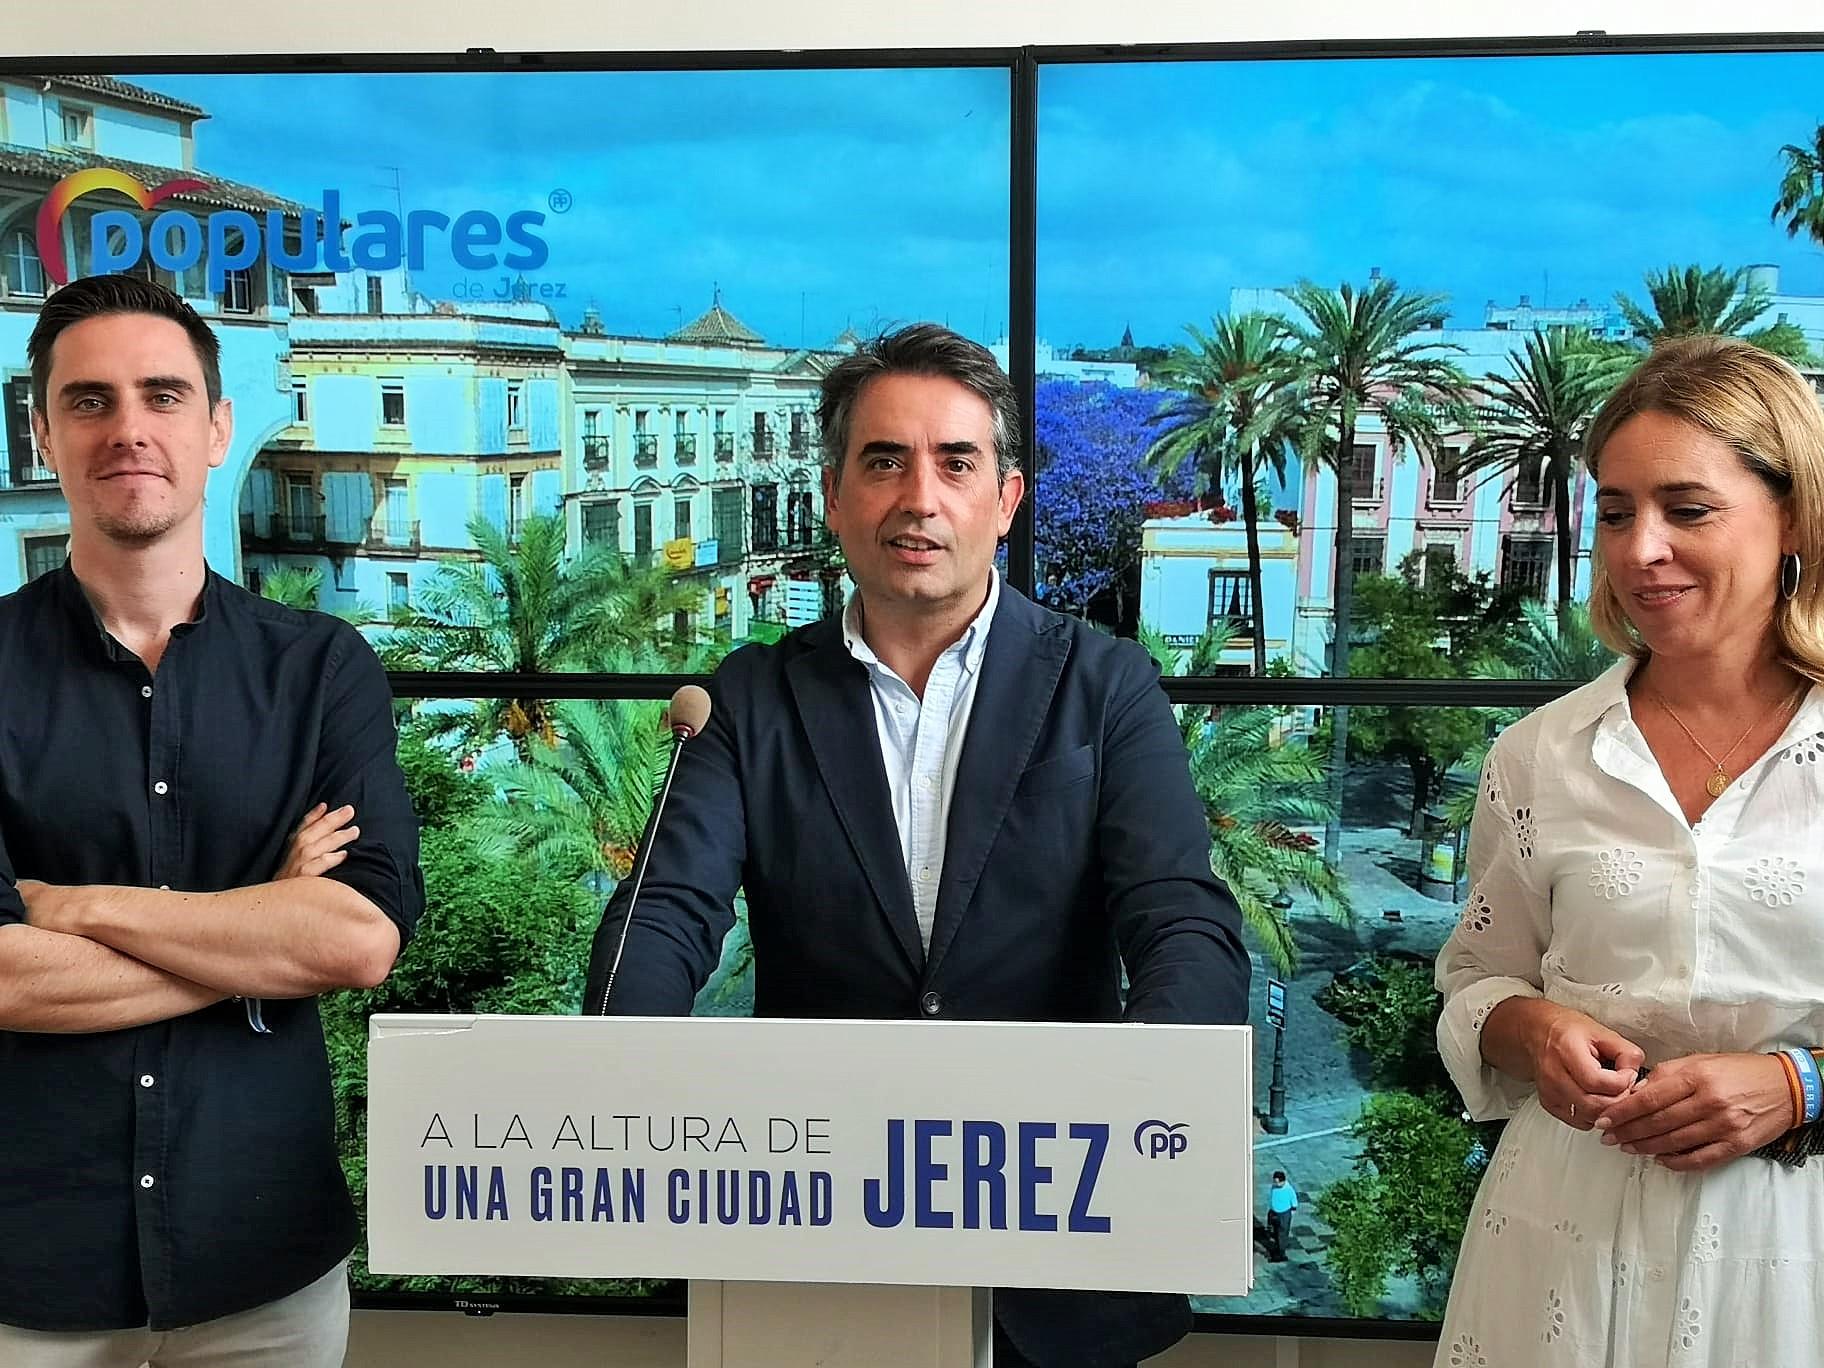 El PP de Jerez aplaude la gestión de Juanma Moreno: "Ahorraremos 8 millones gracias a esta sexta bajada de impuestos"